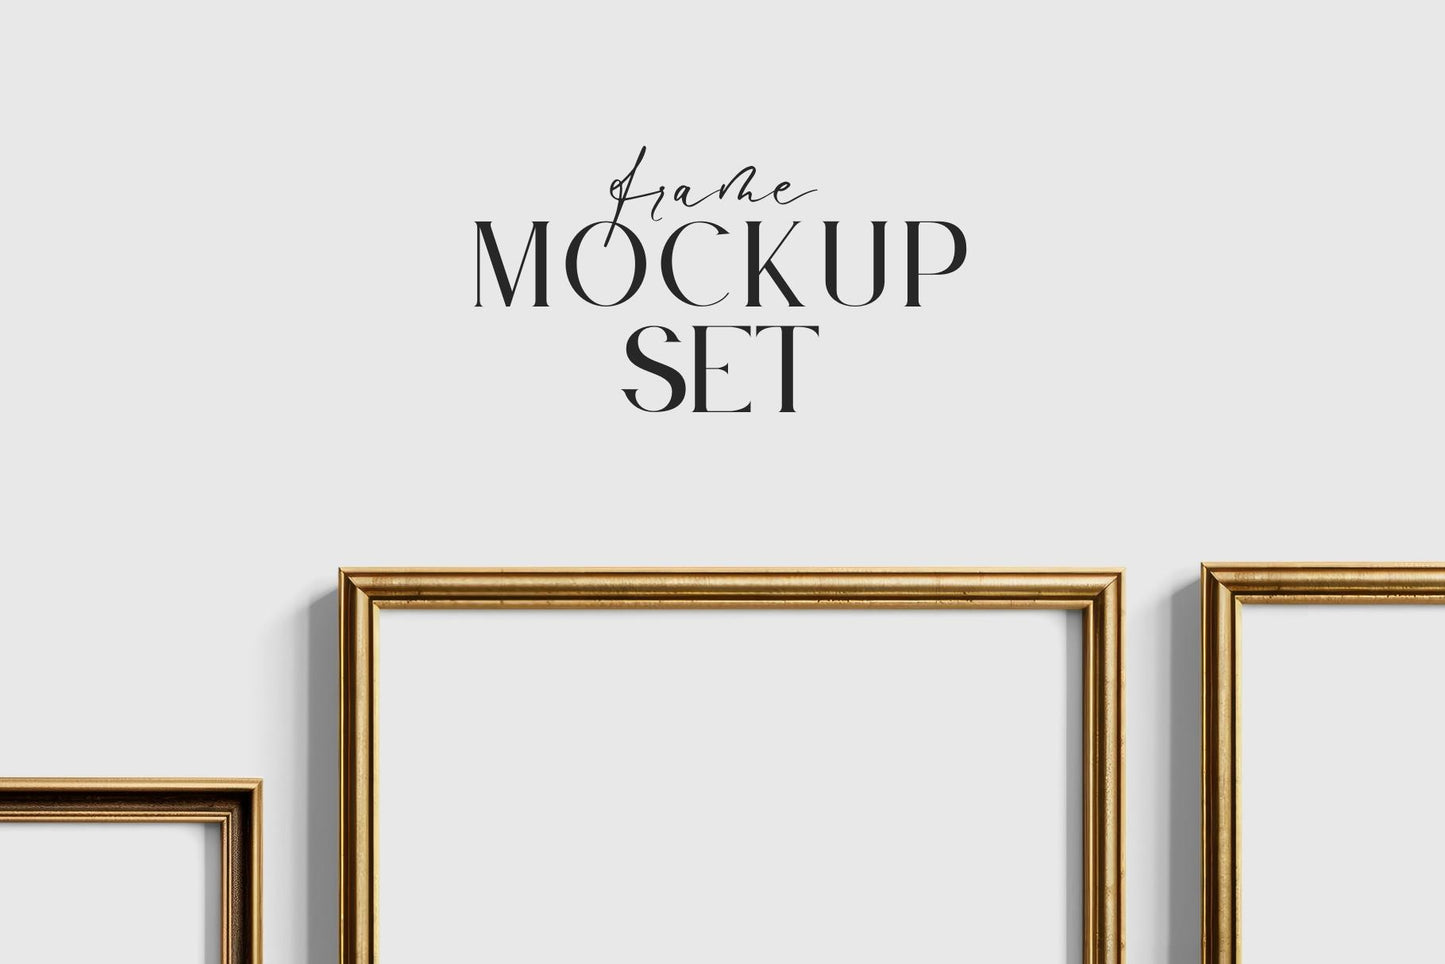 Gallery Wall Mockup | Metallic Frame Mockup Set of 5 Vertical Frames 5:7, 3:4 | Vintage Gold Frame Mockup Set | PSD Template + Transparent PNG Files